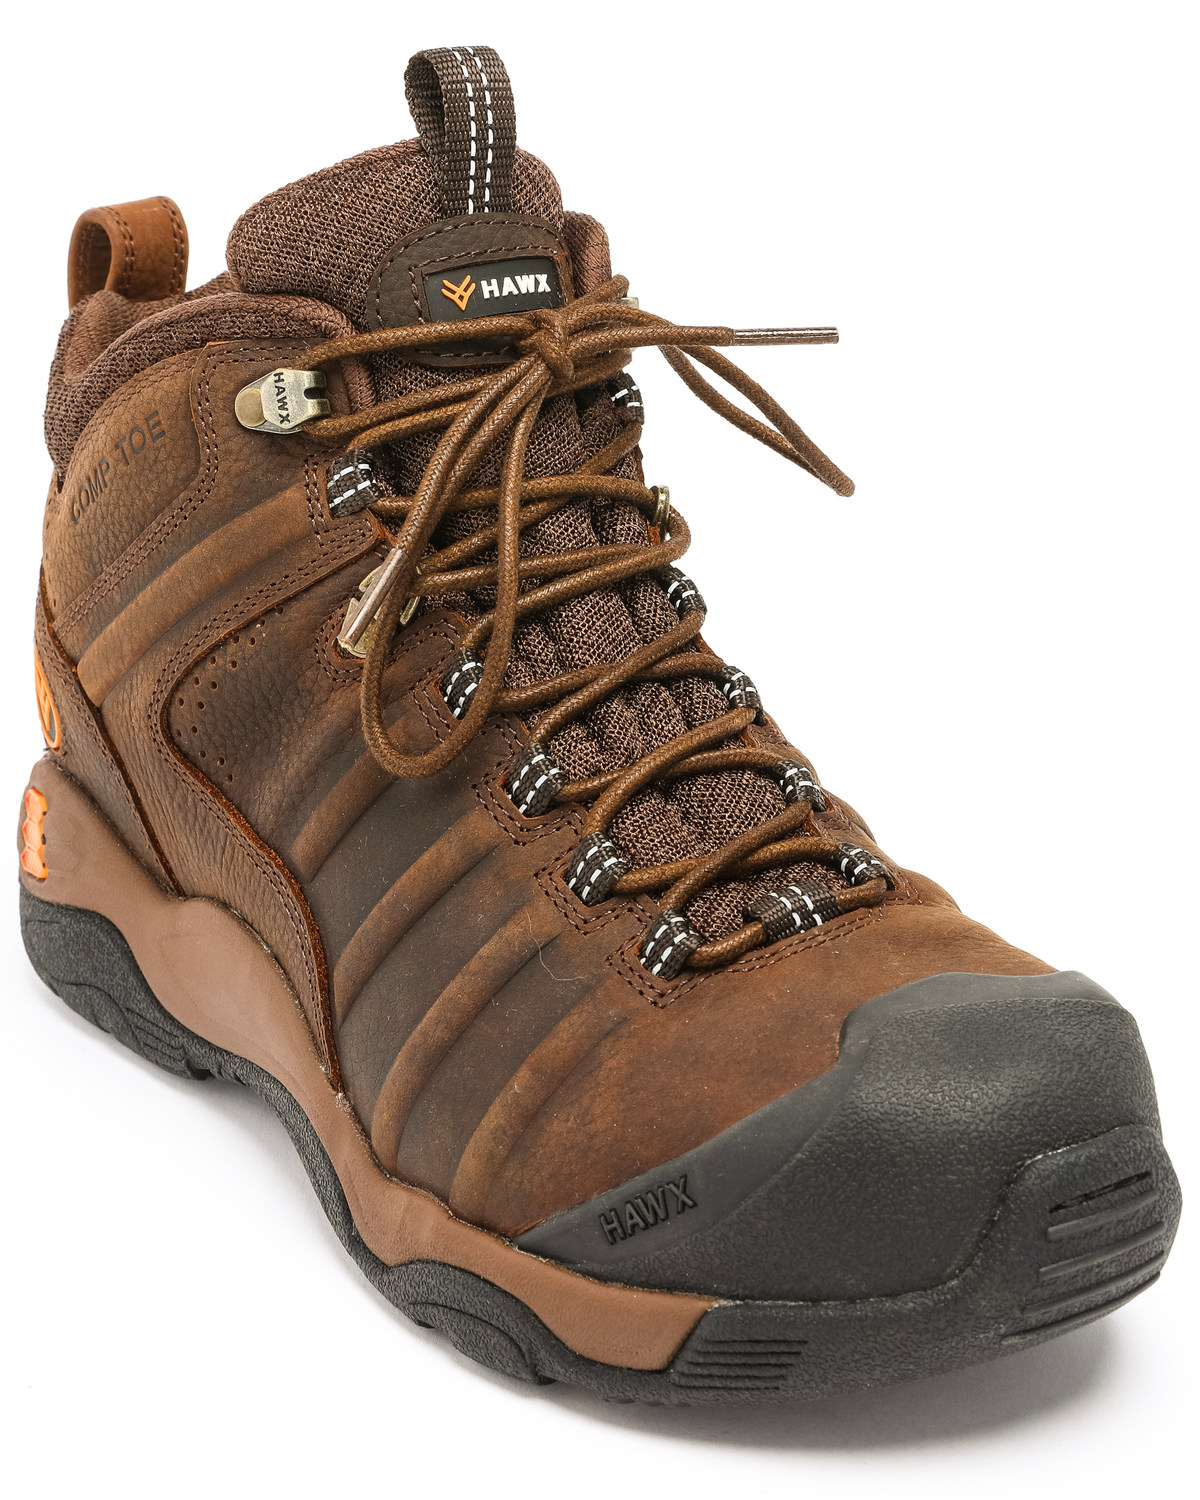 Hawx Men's Axis Hiker Boots - Nano 